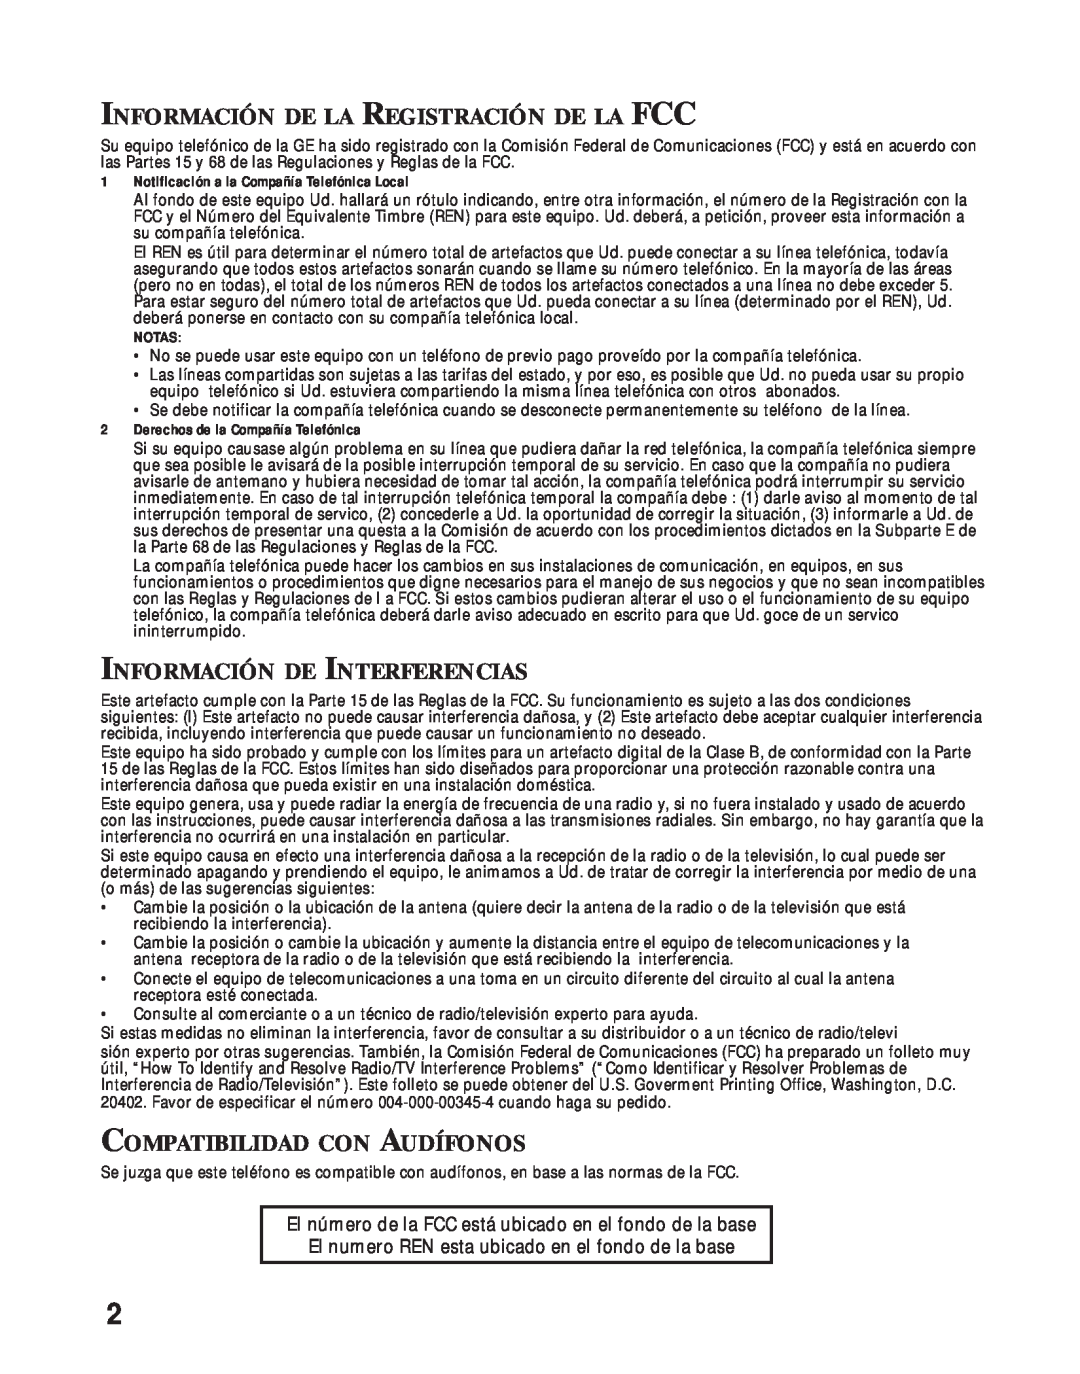 RCA 26730 manual Información De La Registración De La Fcc, Información De Interferencias, Compatibilidad Con Audífonos 